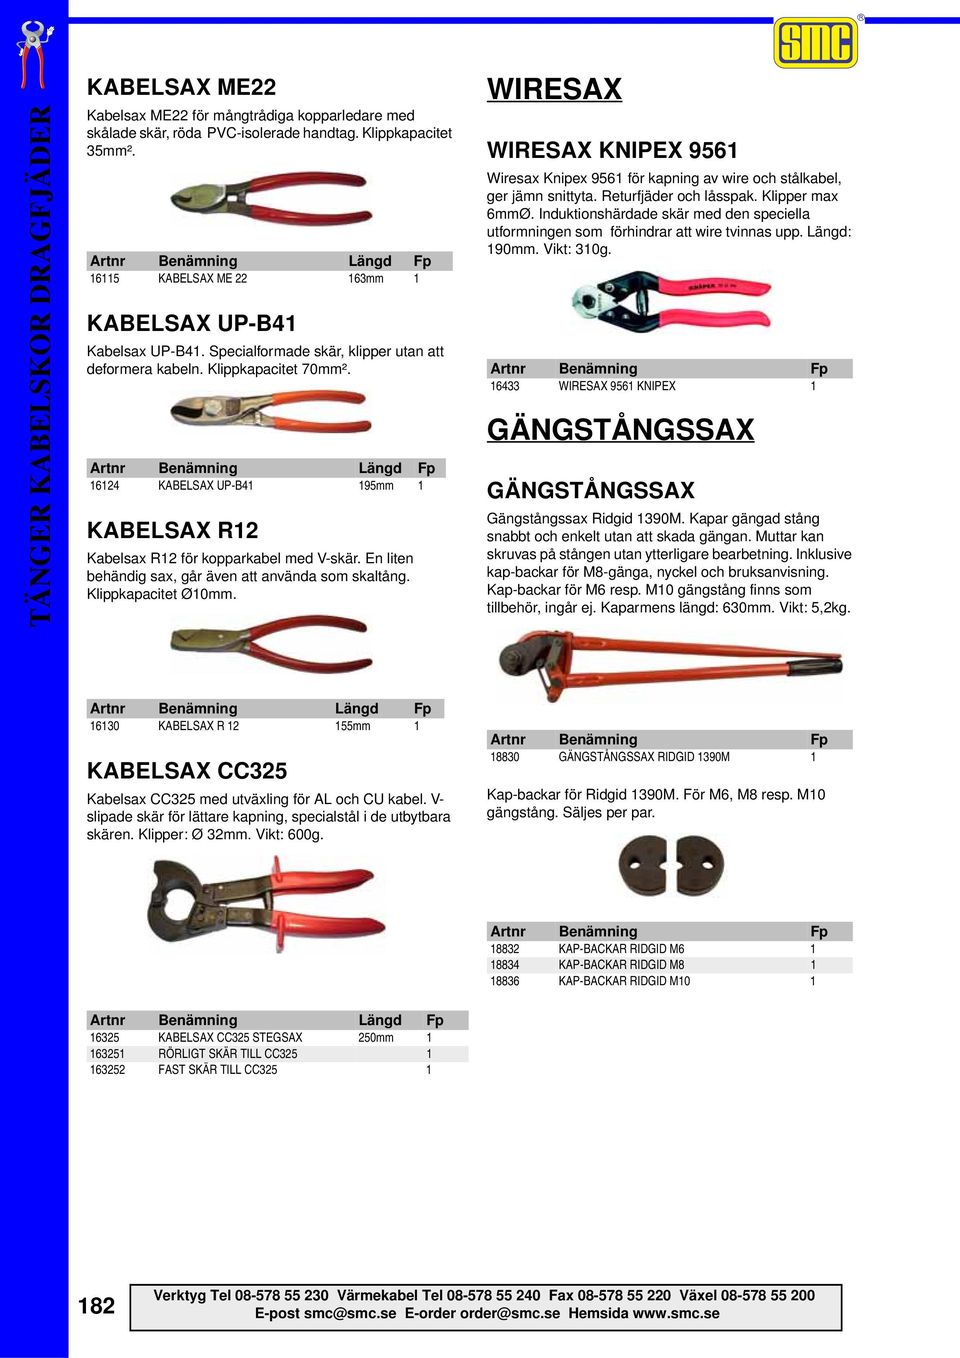 En liten behändig sax, går även att använda som skaltång. Klippkapacitet Ø10mm. WIRESAX WIRESAX KNIPEX 9561 Wiresax Knipex 9561 för kapning av wire och stålkabel, ger jämn snittyta.